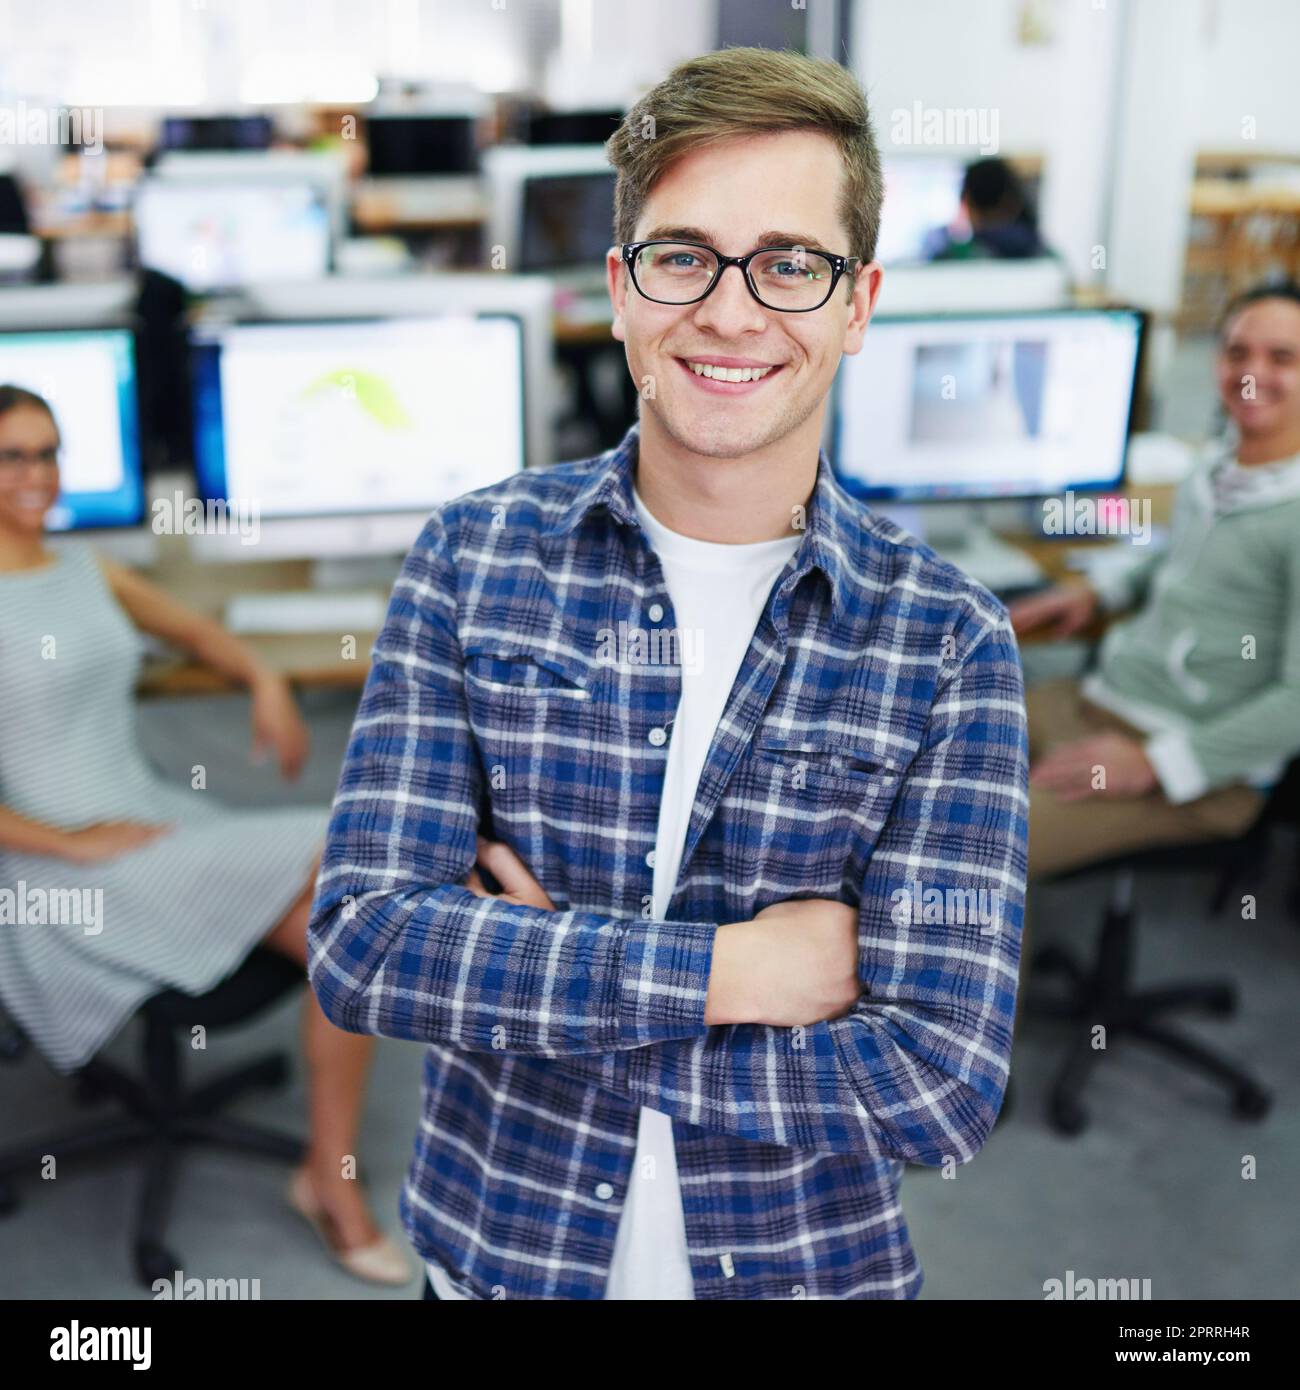 Ich habe die Fähigkeiten erworben, um erfolgreich zu sein. Porträt eines lächelnden jungen Designers, der in einem Büro mit Kollegen im Hintergrund steht. Stockfoto